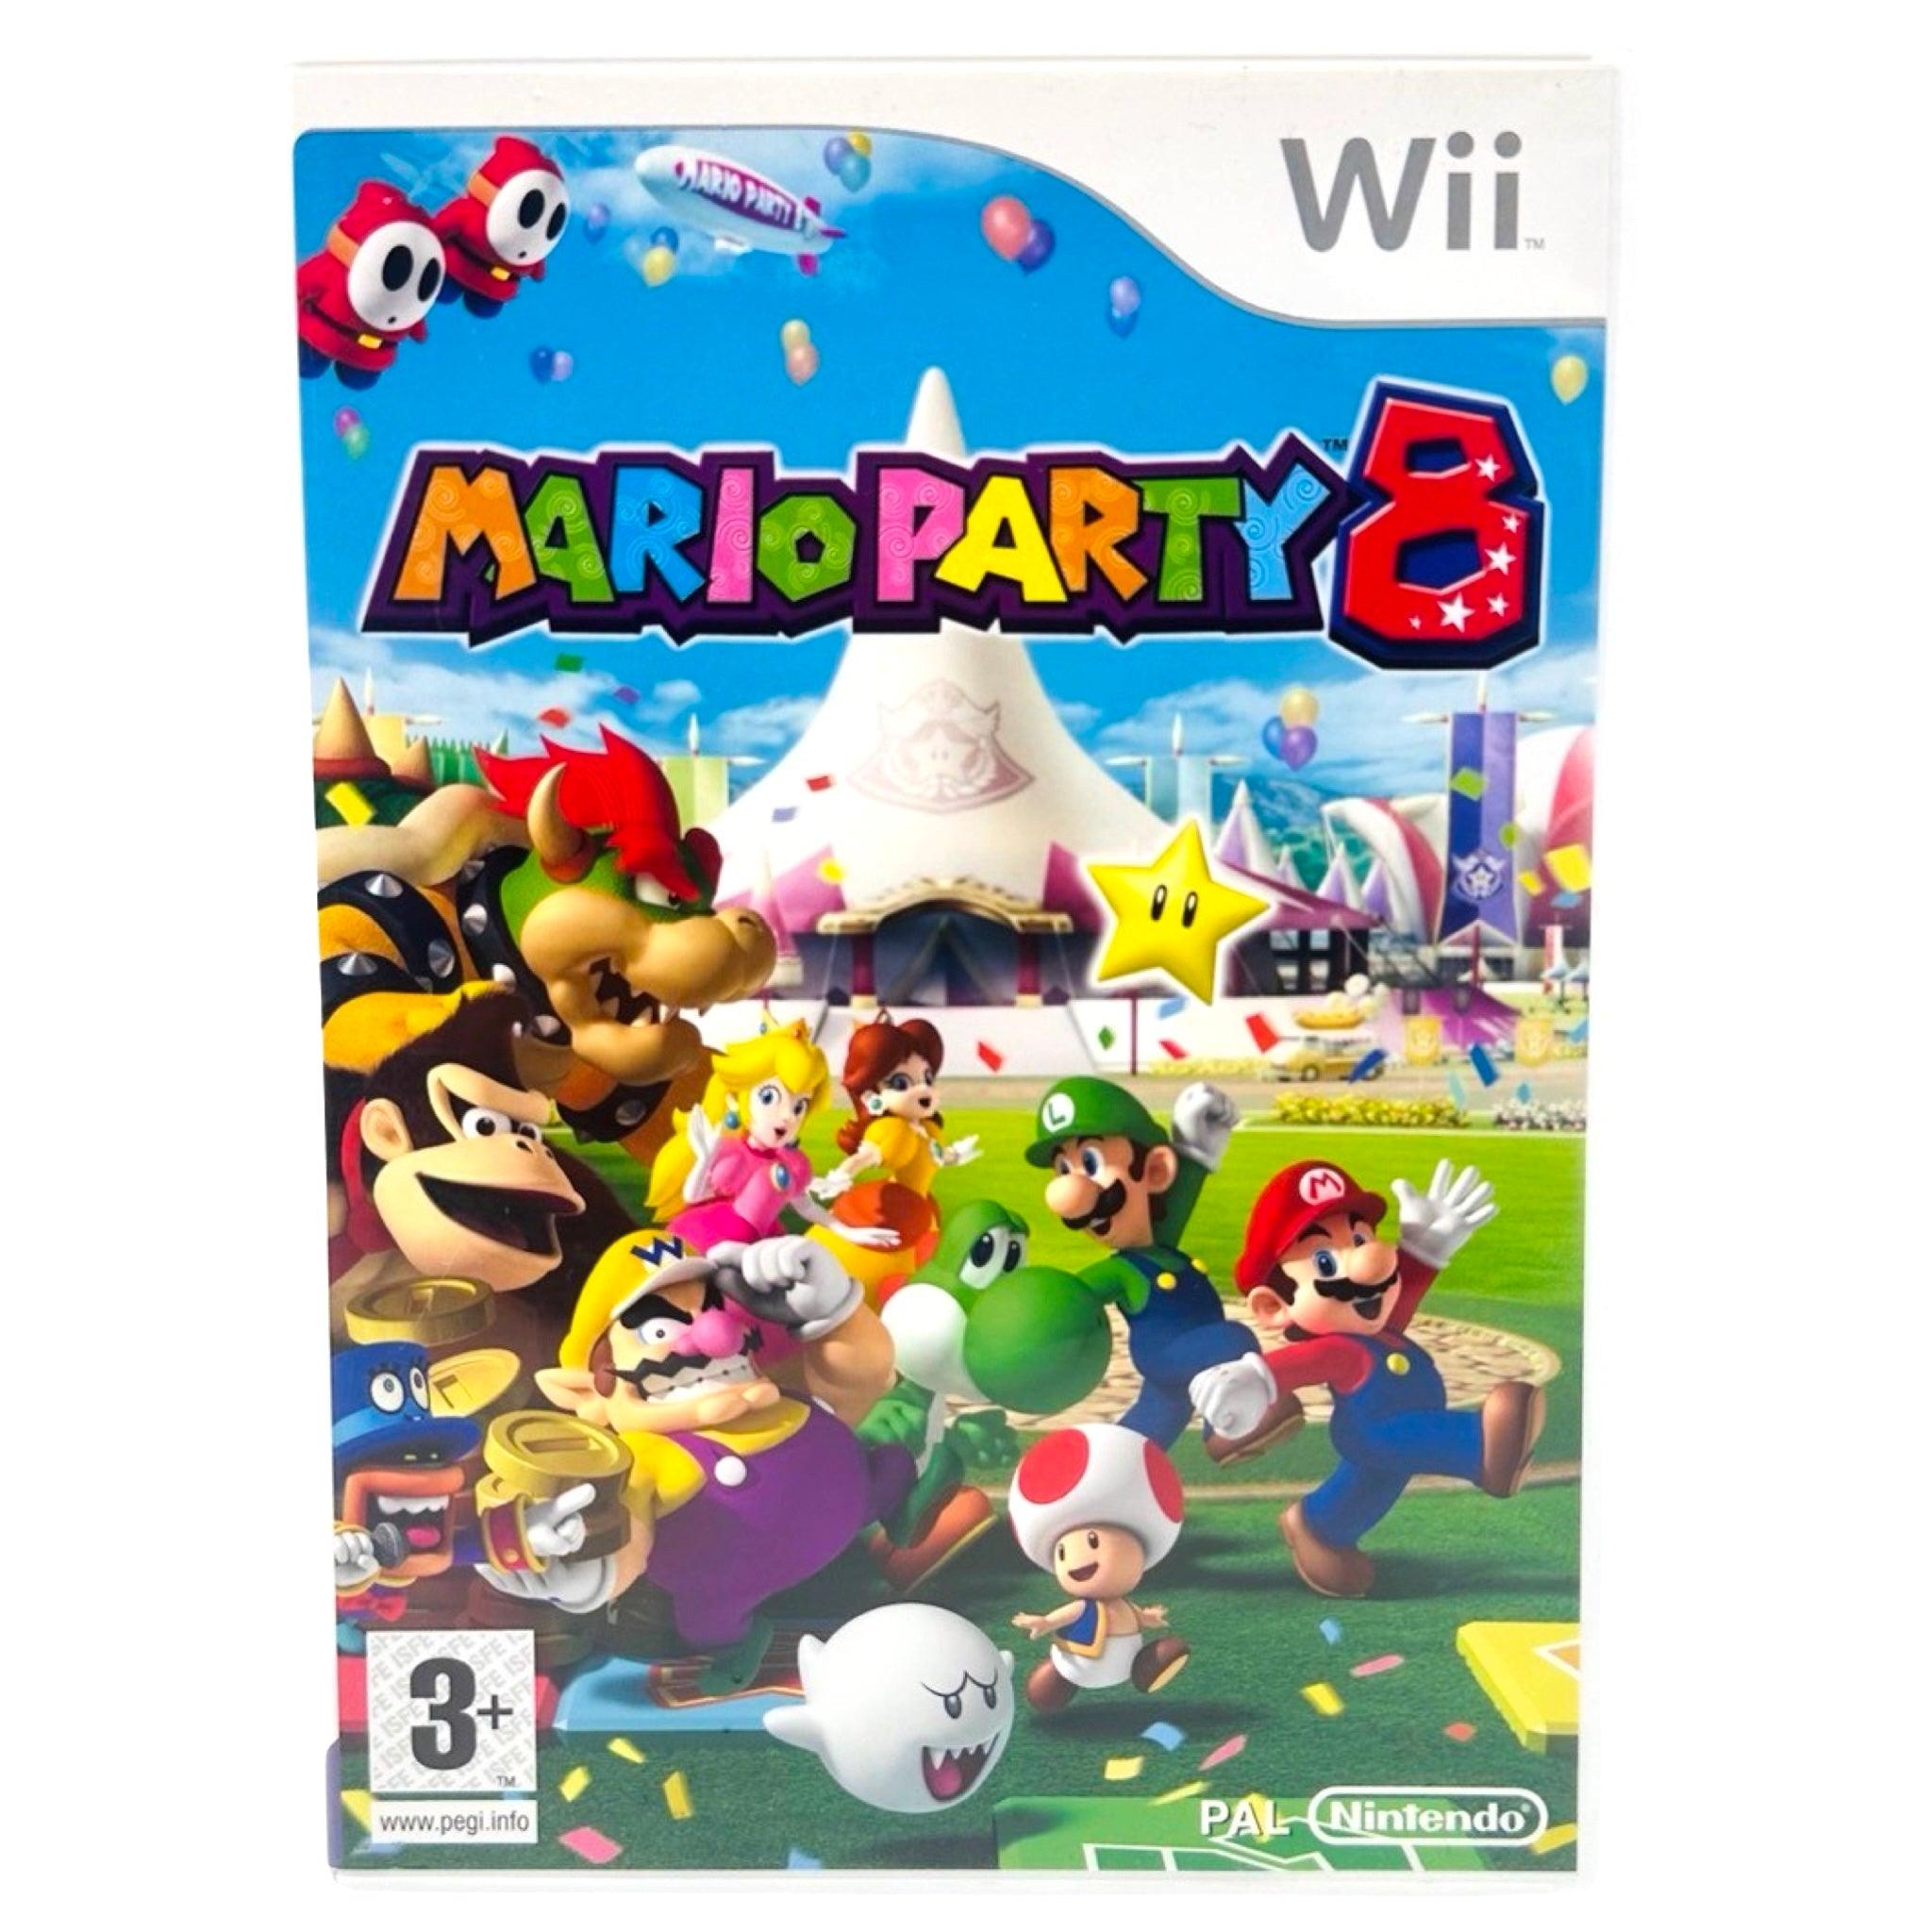 Wii: Mario Party 8 - RetroGaming.no